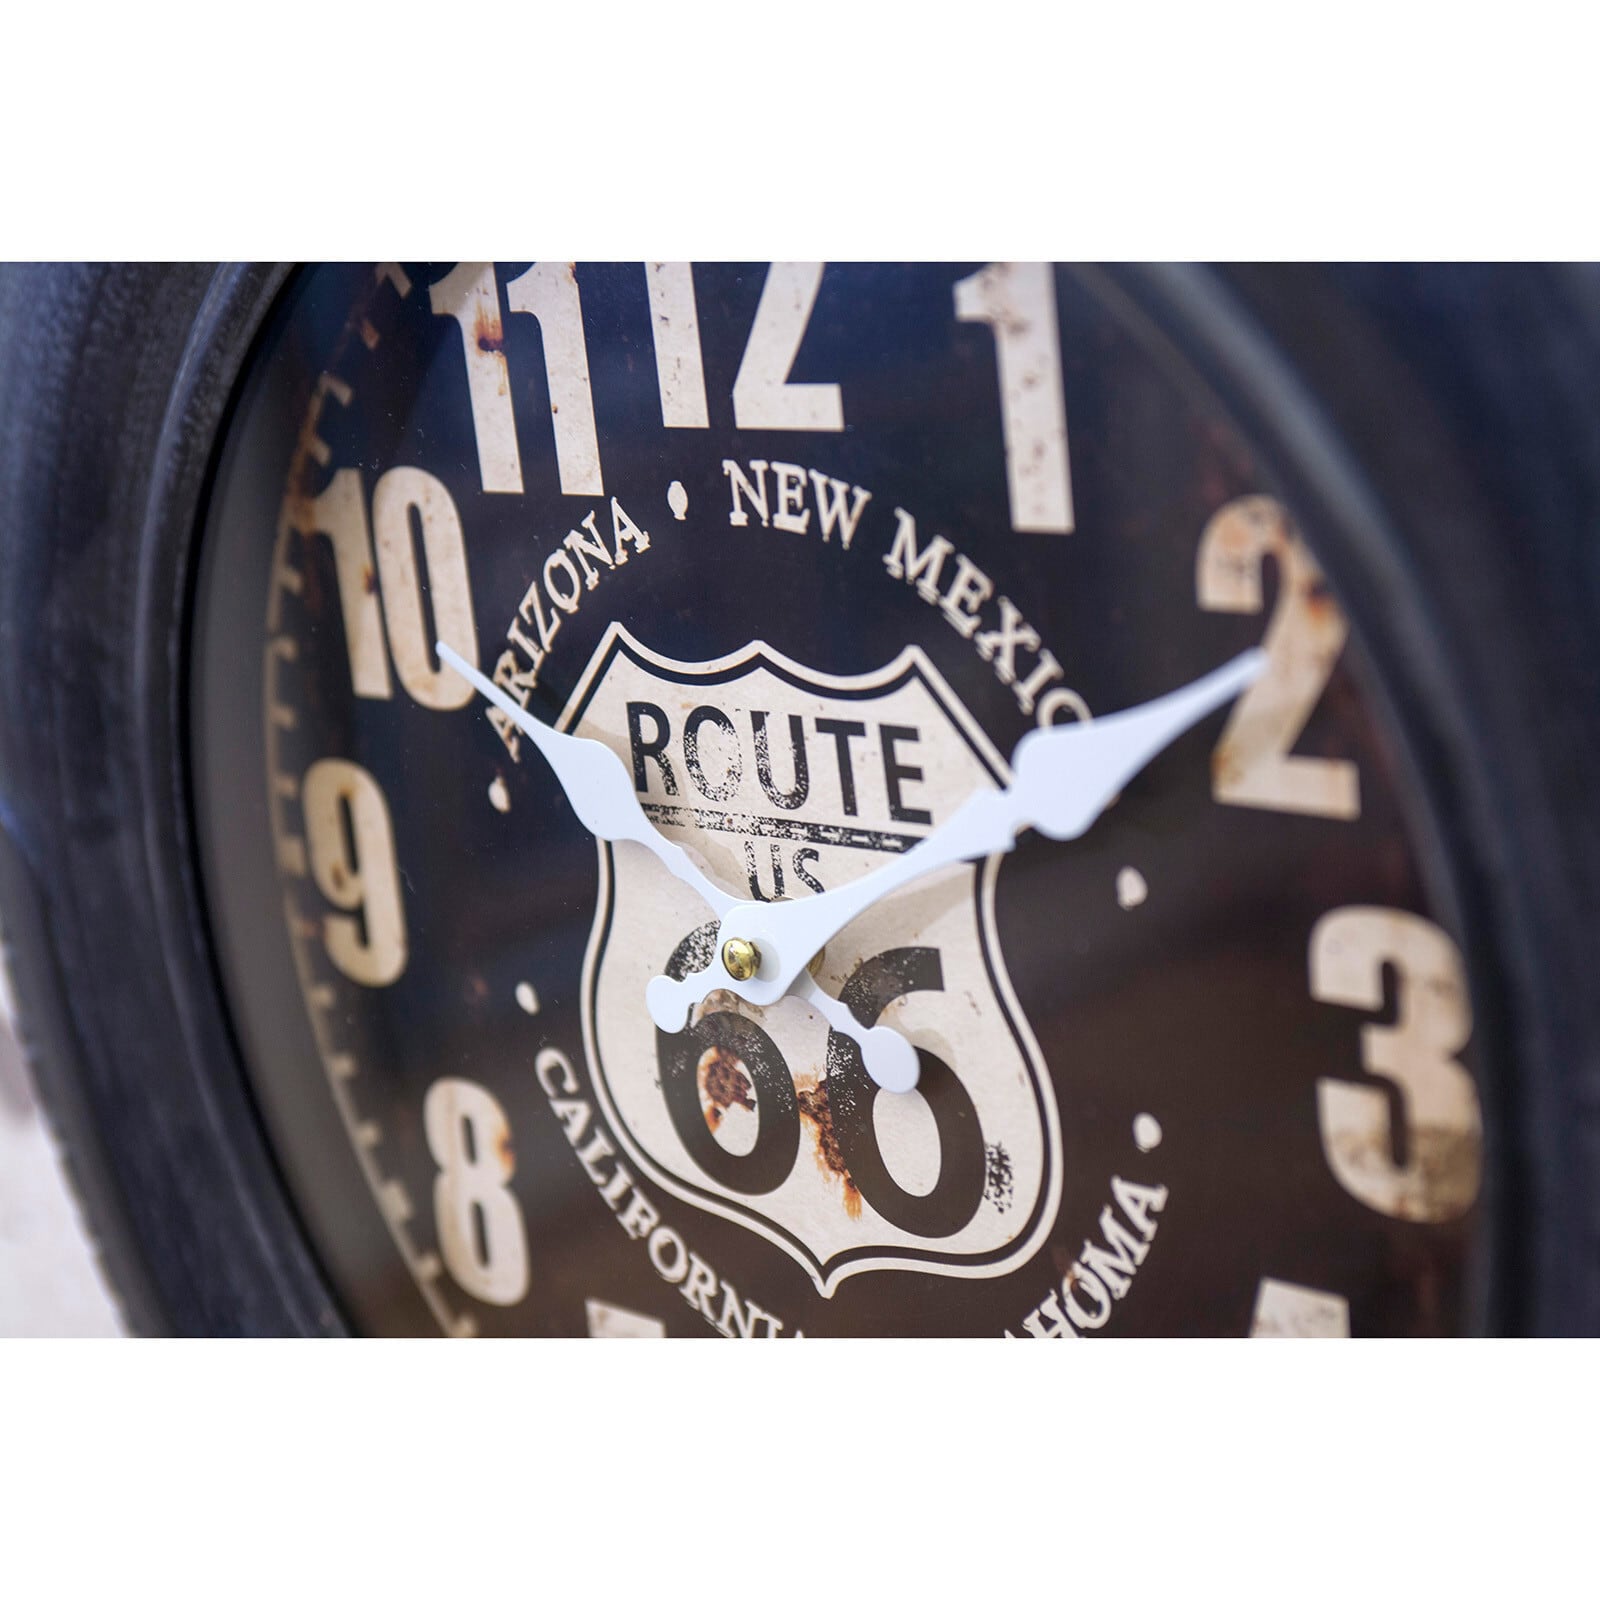 壁掛け時計 タイヤの形 アンティーク ヴィンテージ調 時計